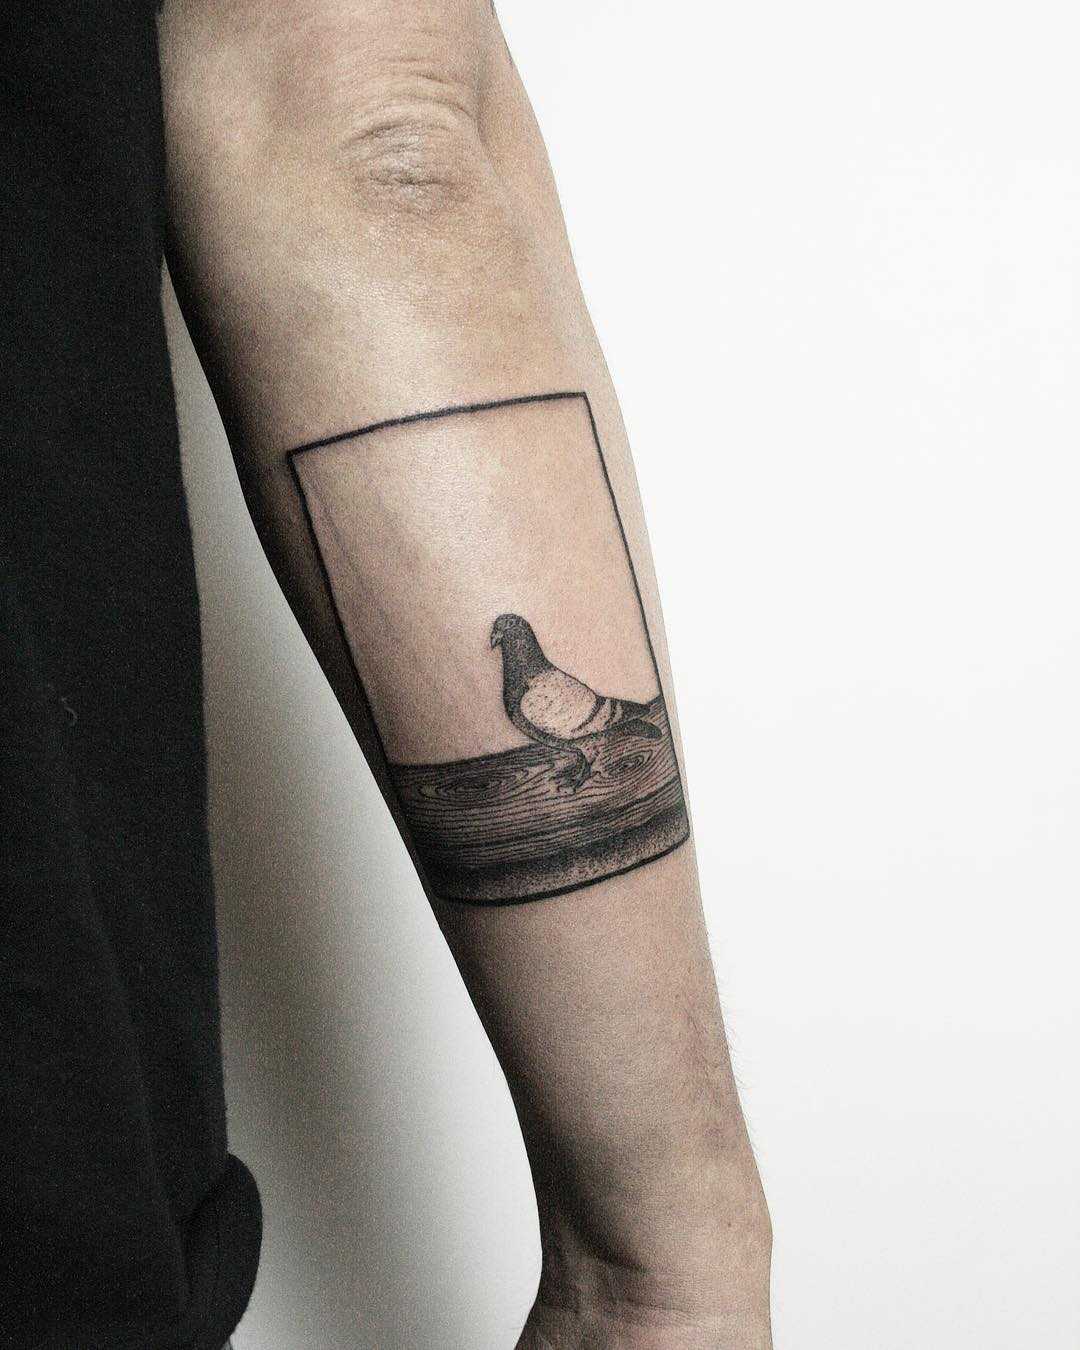 iamhuka | Pigeon. #tattoo #pigeontattoo #latattooartist | Instagram